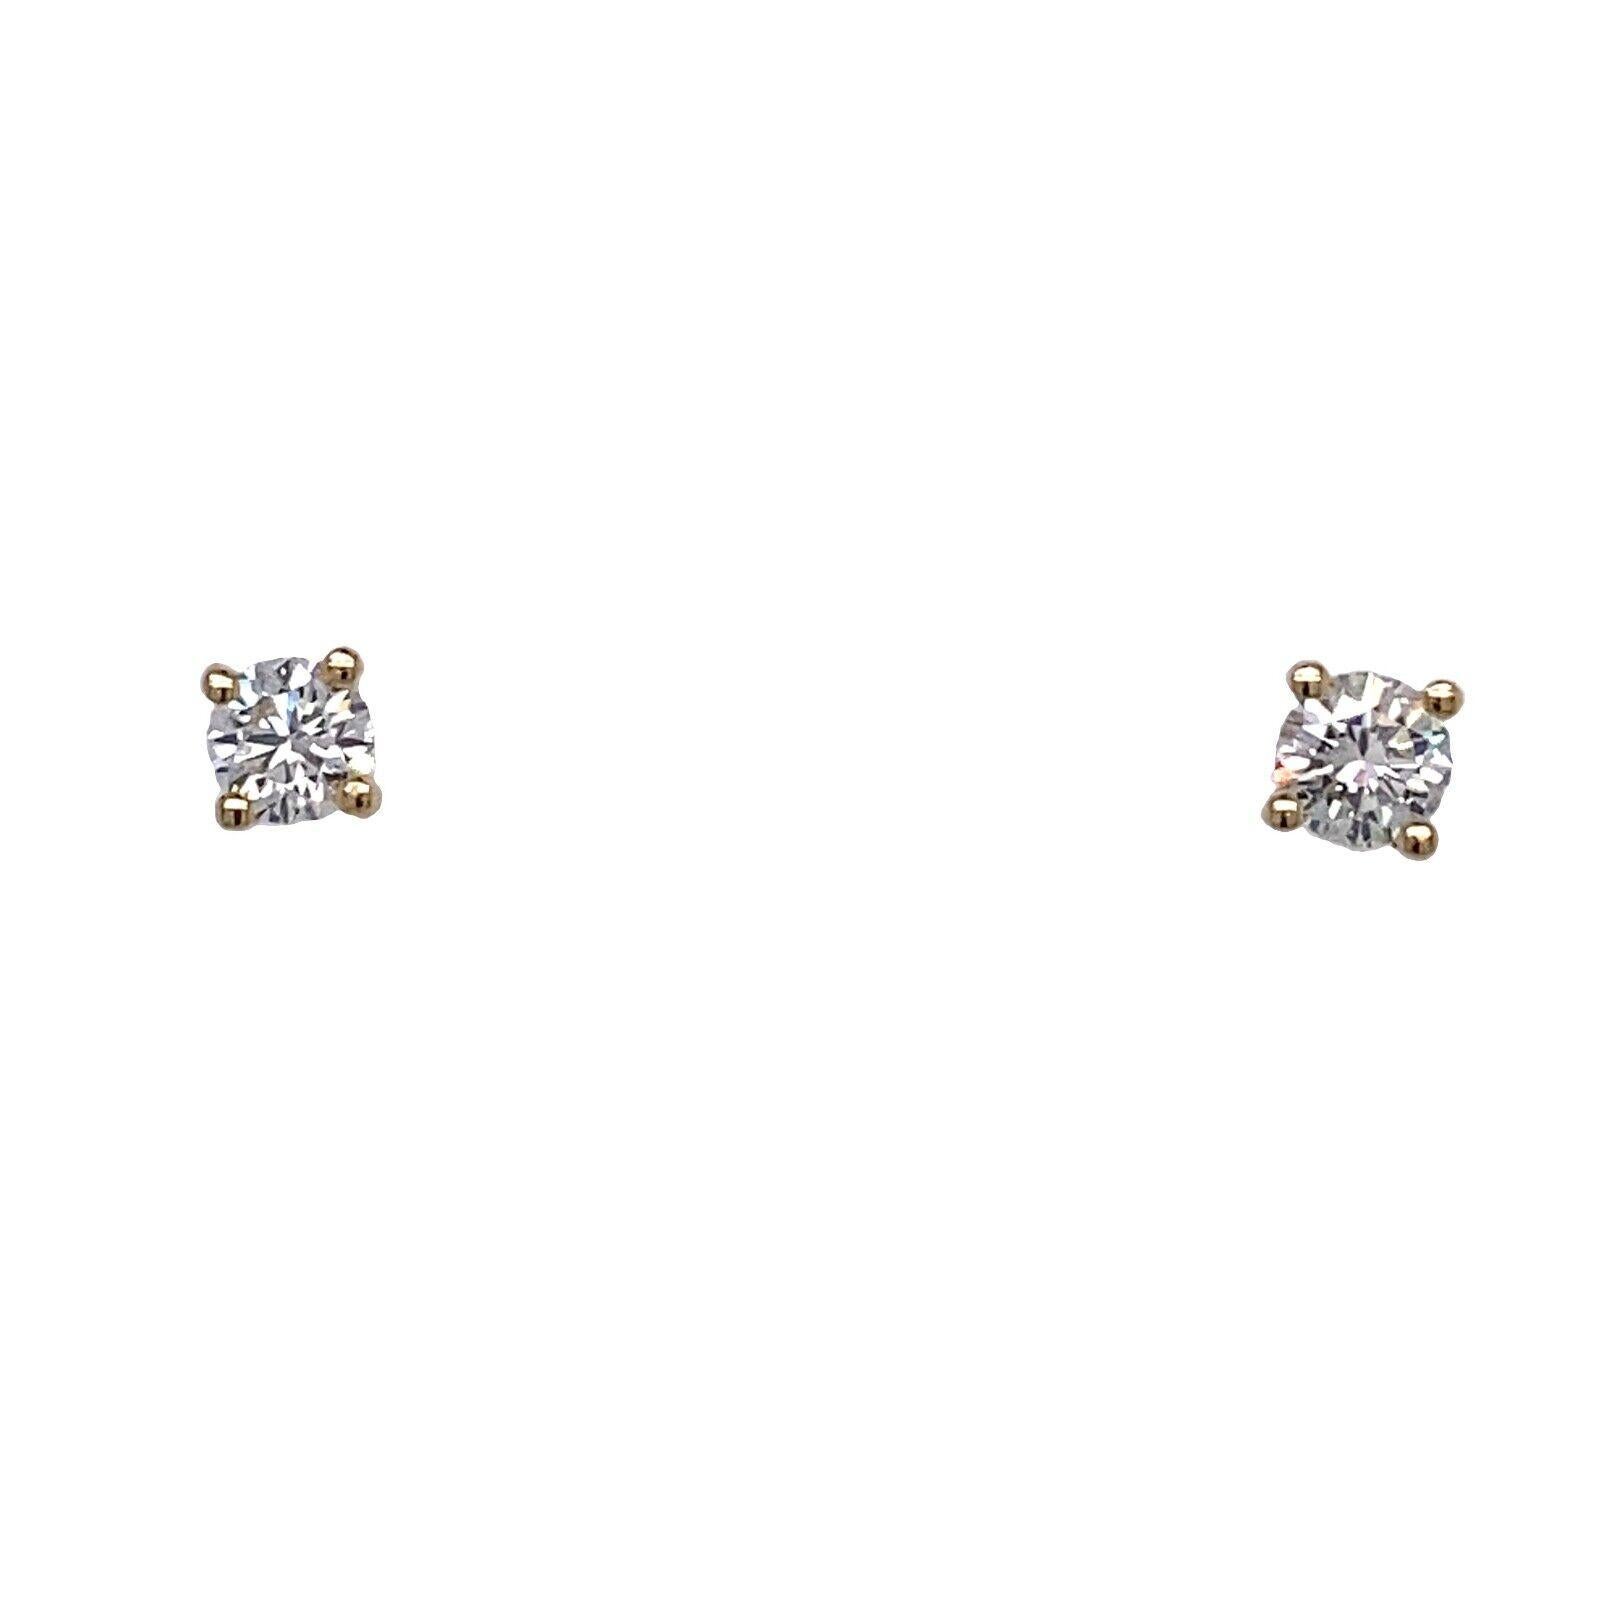 Solitär-Ohrstecker aus 18 Karat Gelbgold, besetzt mit 0,50 Karat Diamanten

Dieses Paar Ohrringe aus 18 Karat Gelbgold ist mit insgesamt 0,50 Karat runden Diamanten im Brillantschliff besetzt. Die Diamanten sind in vier Krappen gefasst. Dieses Paar